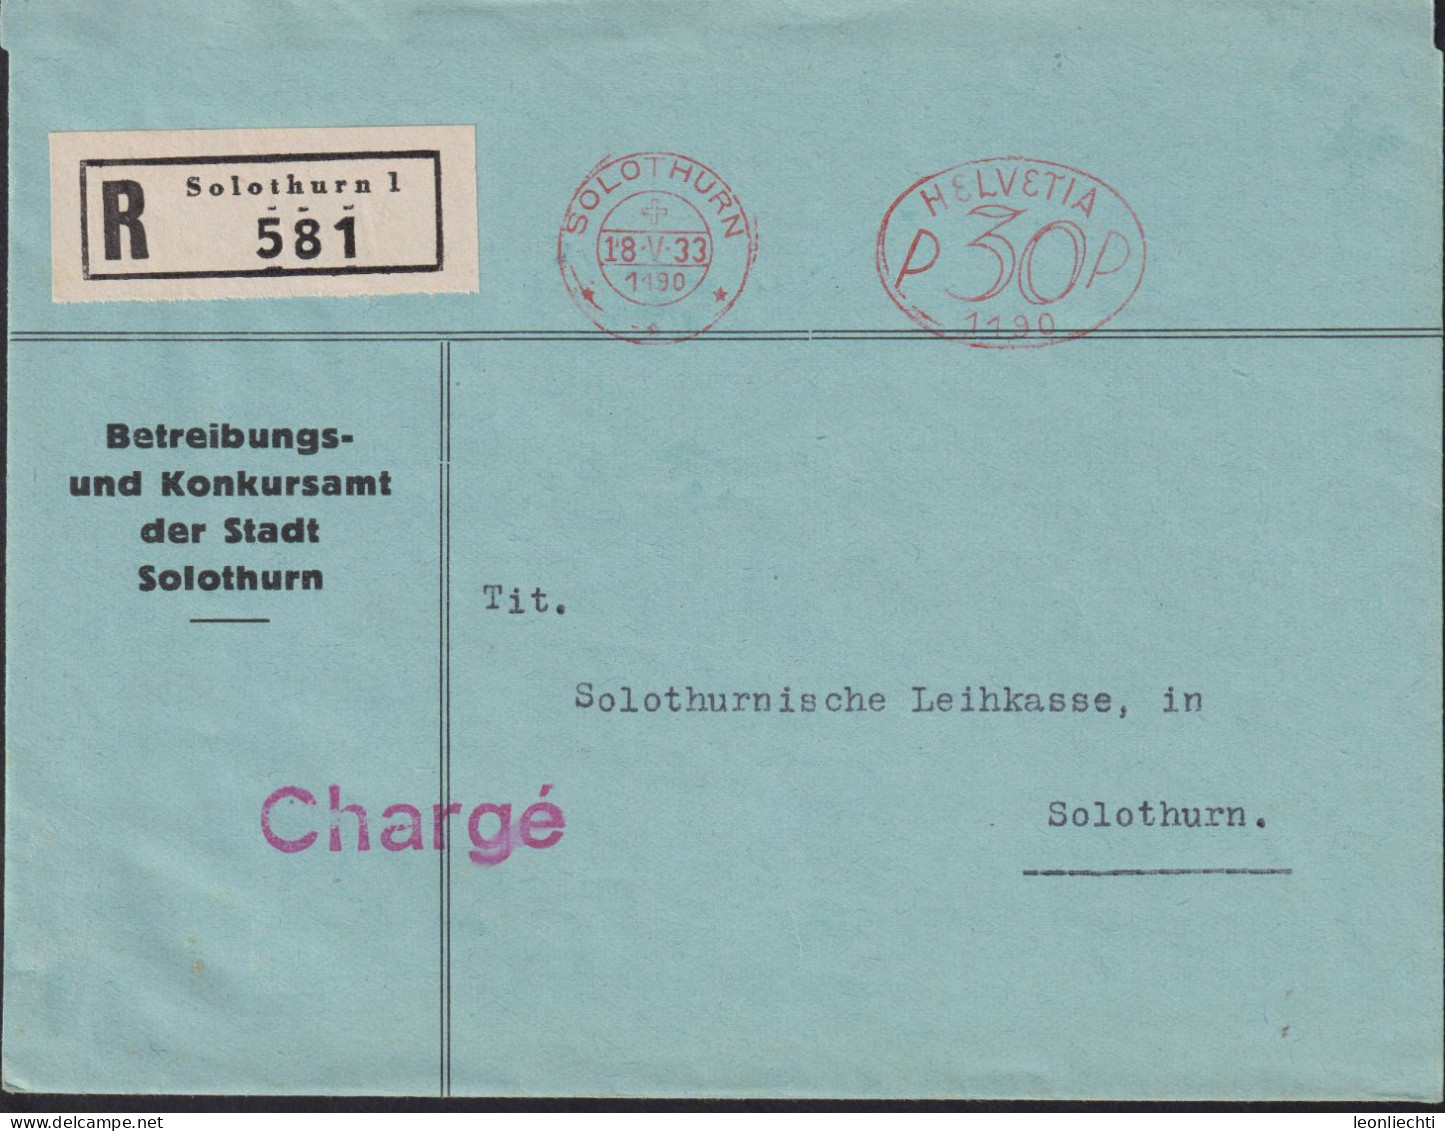 1933 Schweiz, R-Brief (FraMA)  Solothurn + HELVETIA P 30 1190, Betreibungs U. Konkursamt Der Stadt Solothurn - Affrancature Meccaniche